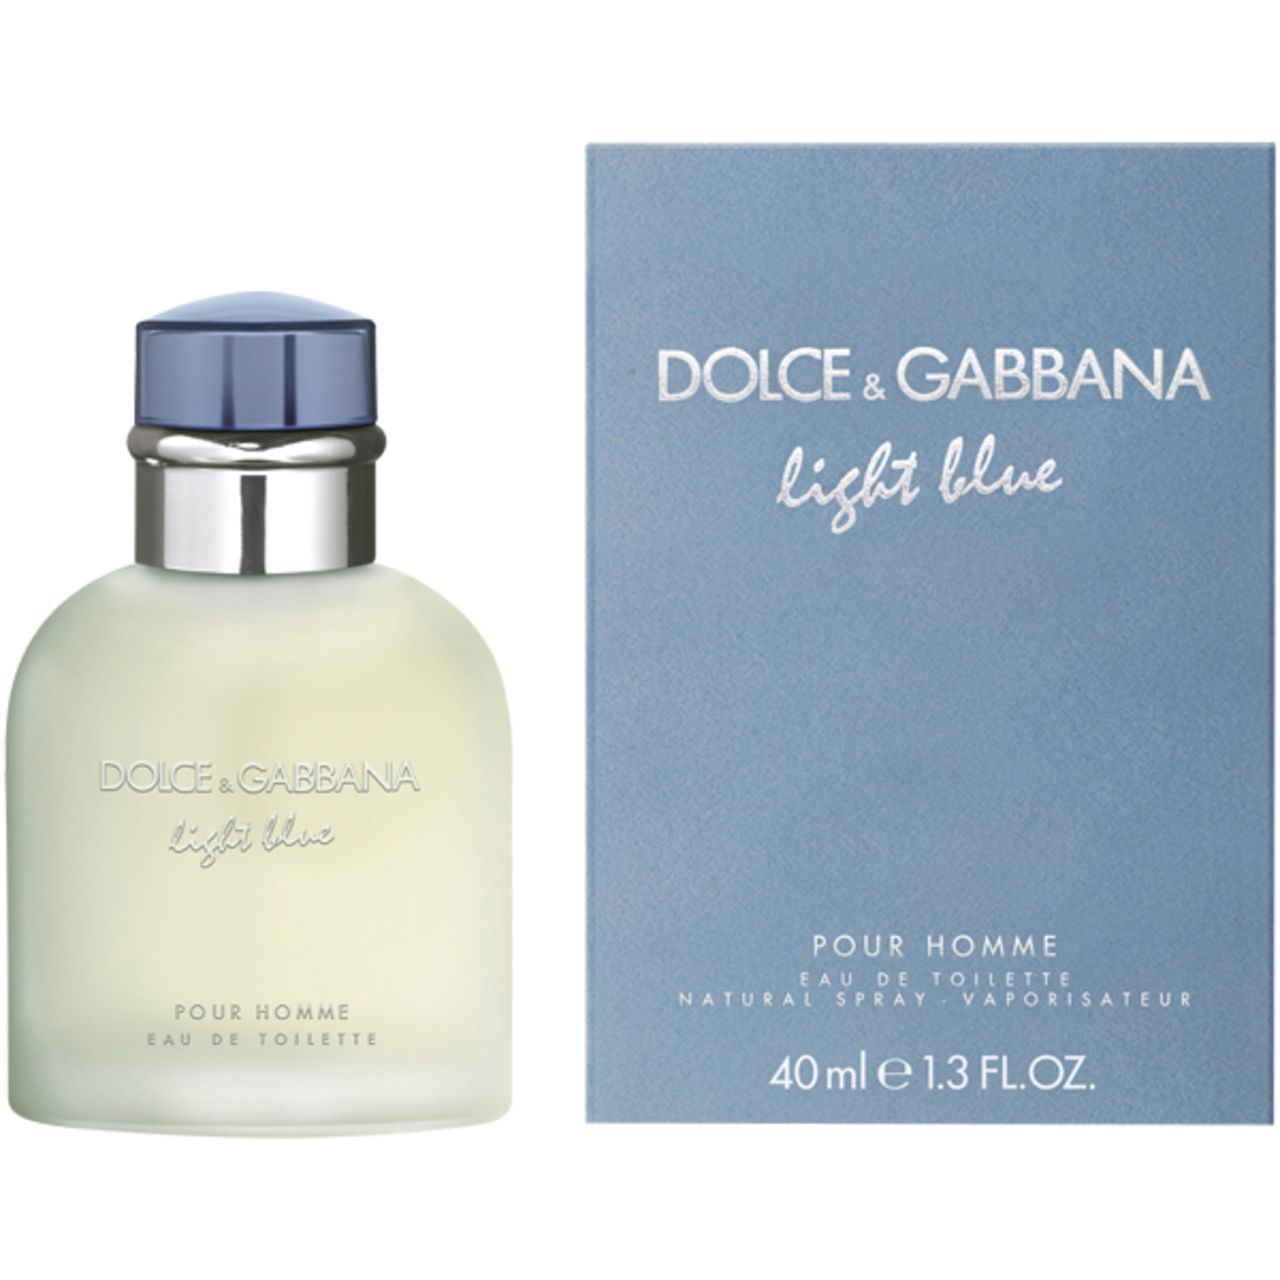 Dolce & Gabbana, Light Blue Pour Homme E.d.T. Nat. Spray